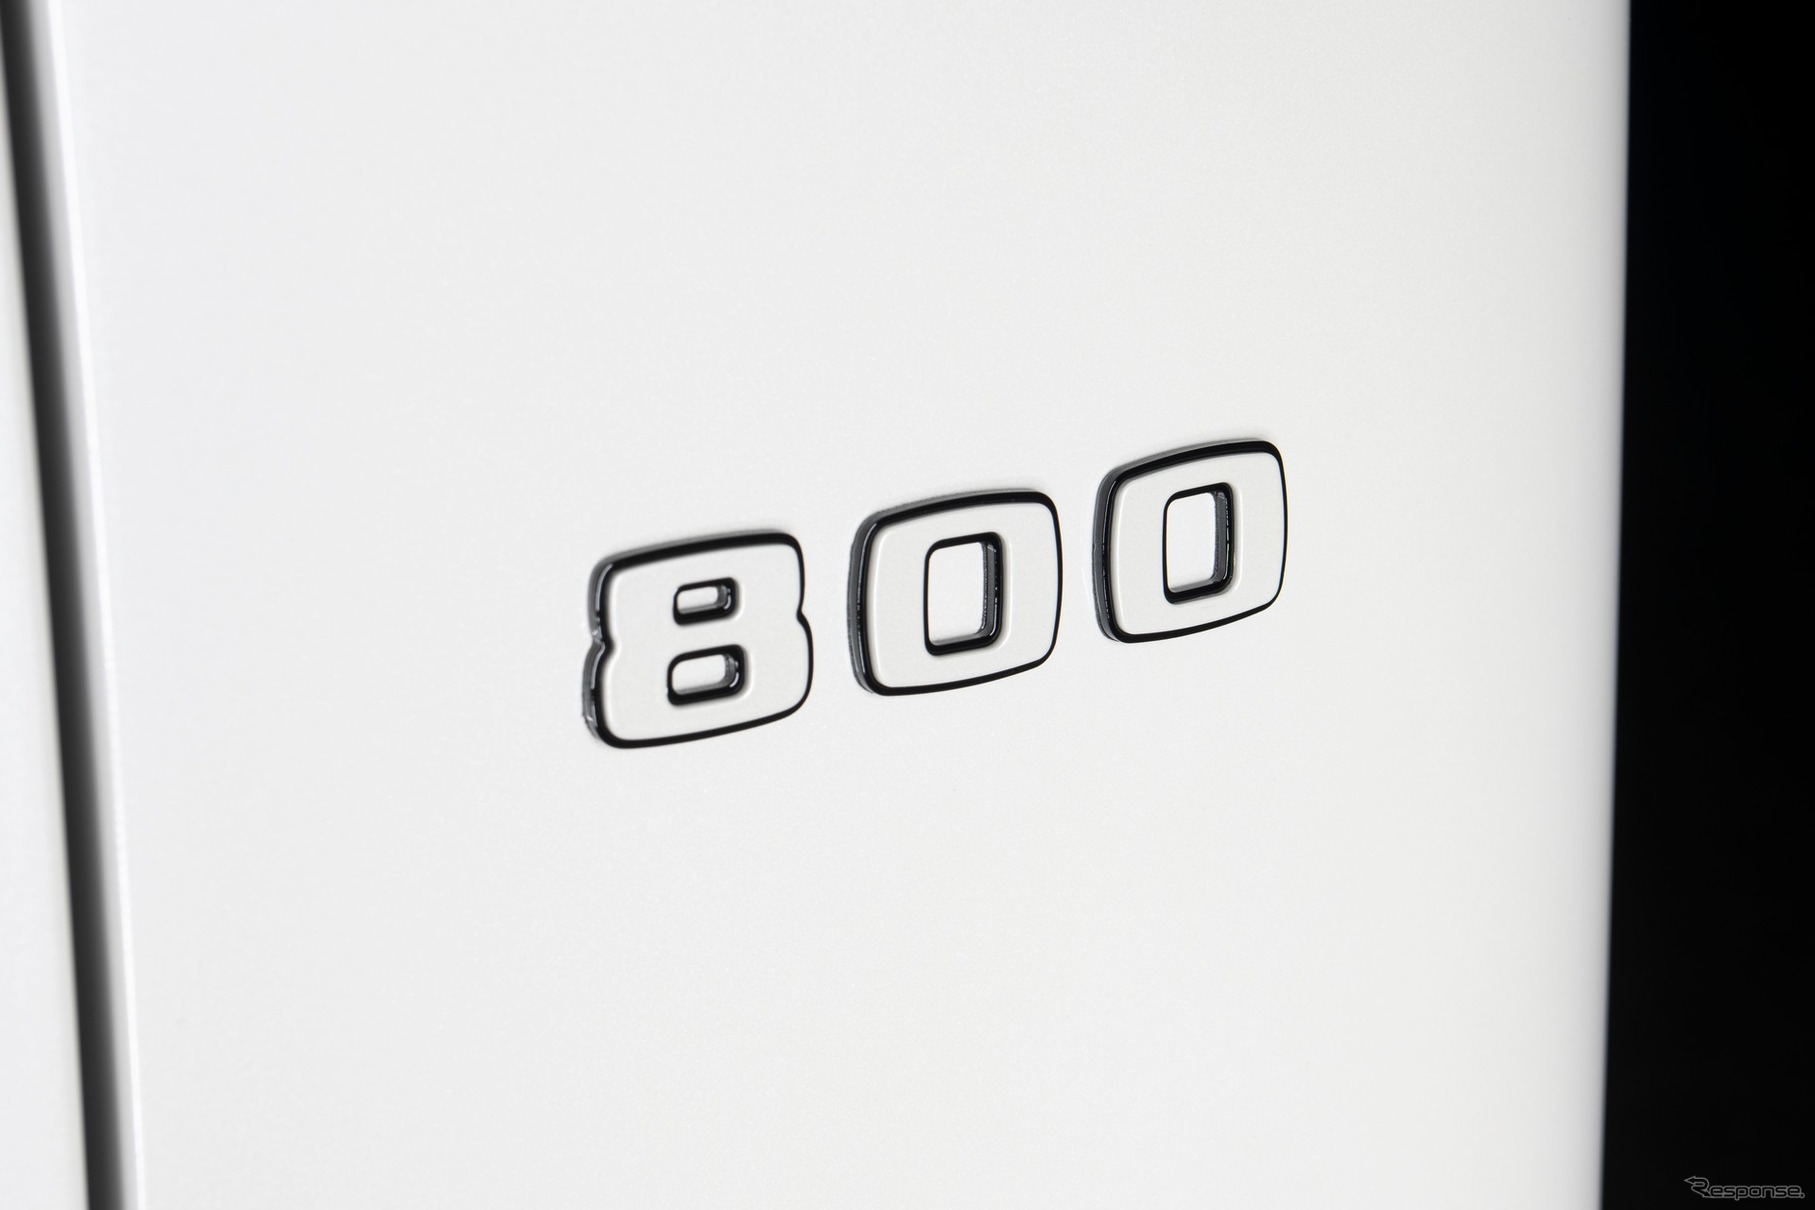 ブラバス 800 XLP スーパーホワイト